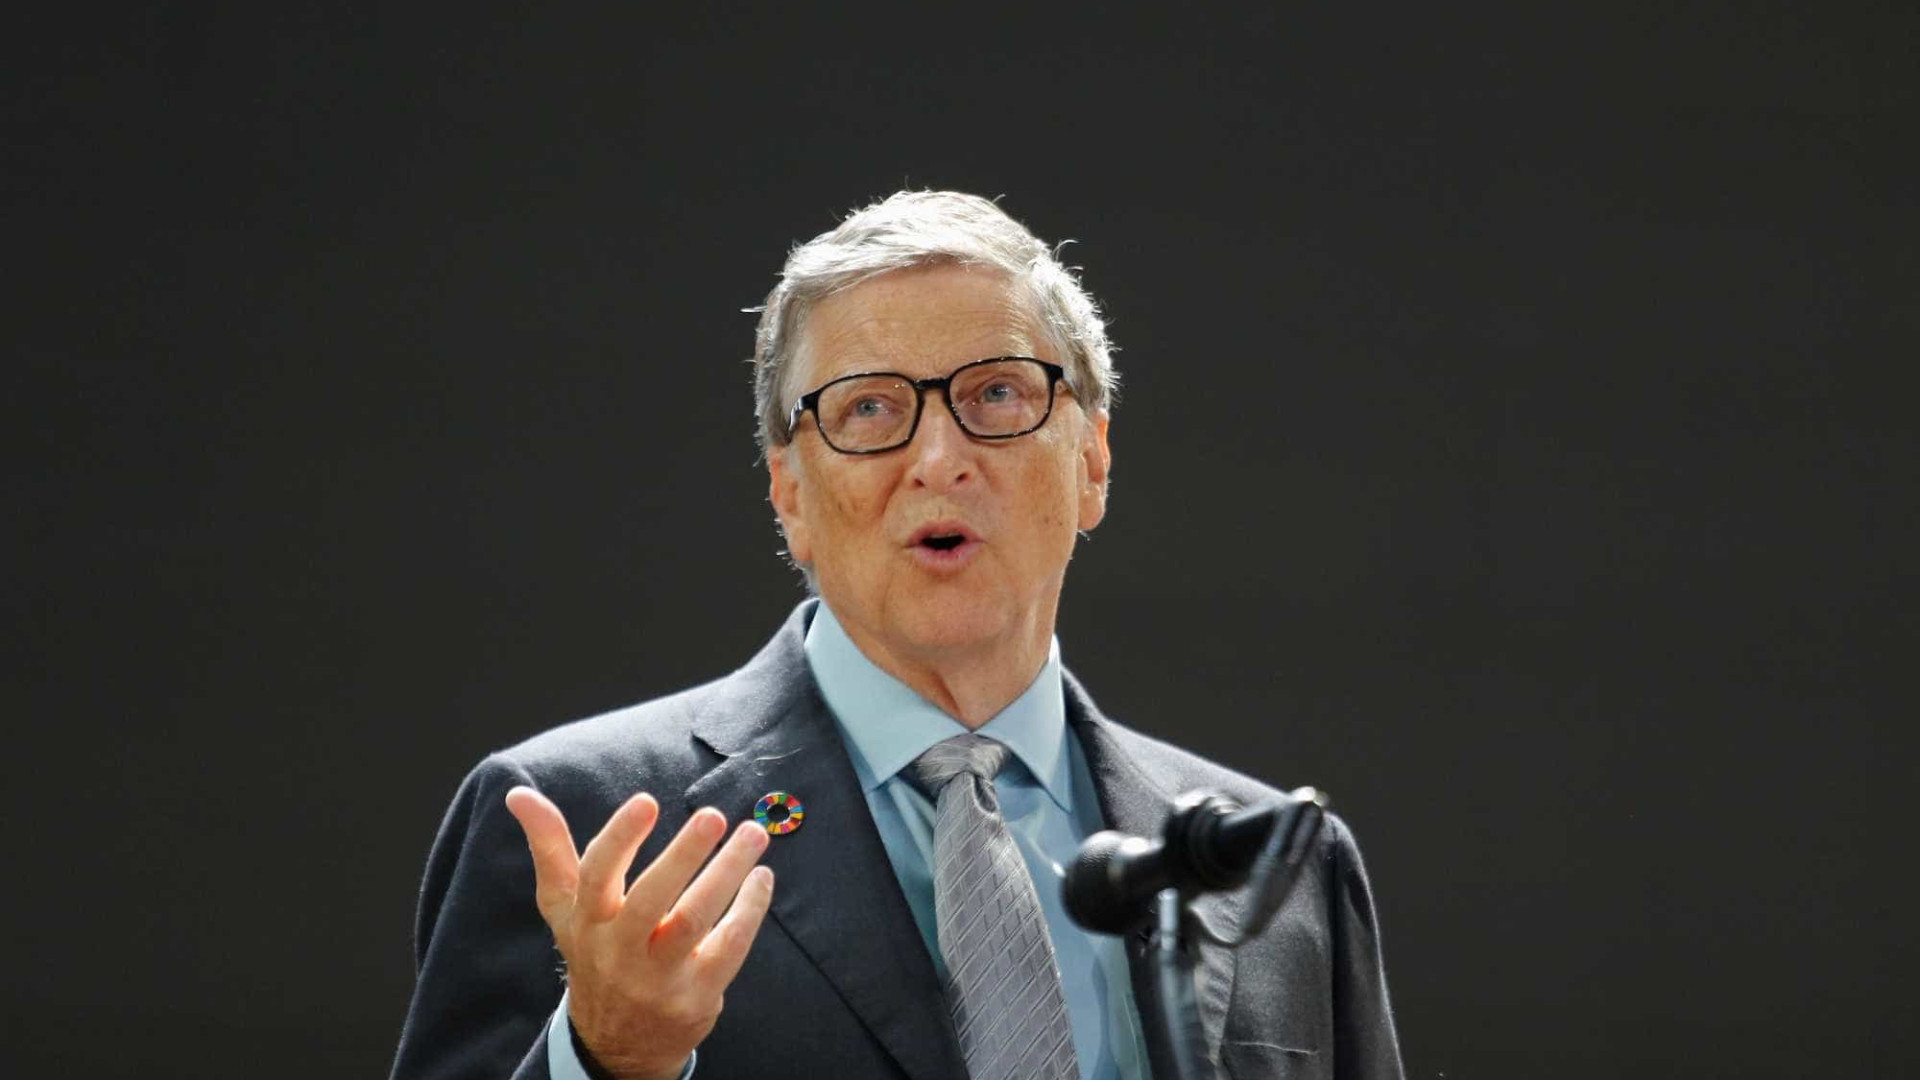 Entenda por que Bill Gates se arrepende do comando 'Ctrl + Alt + Del'